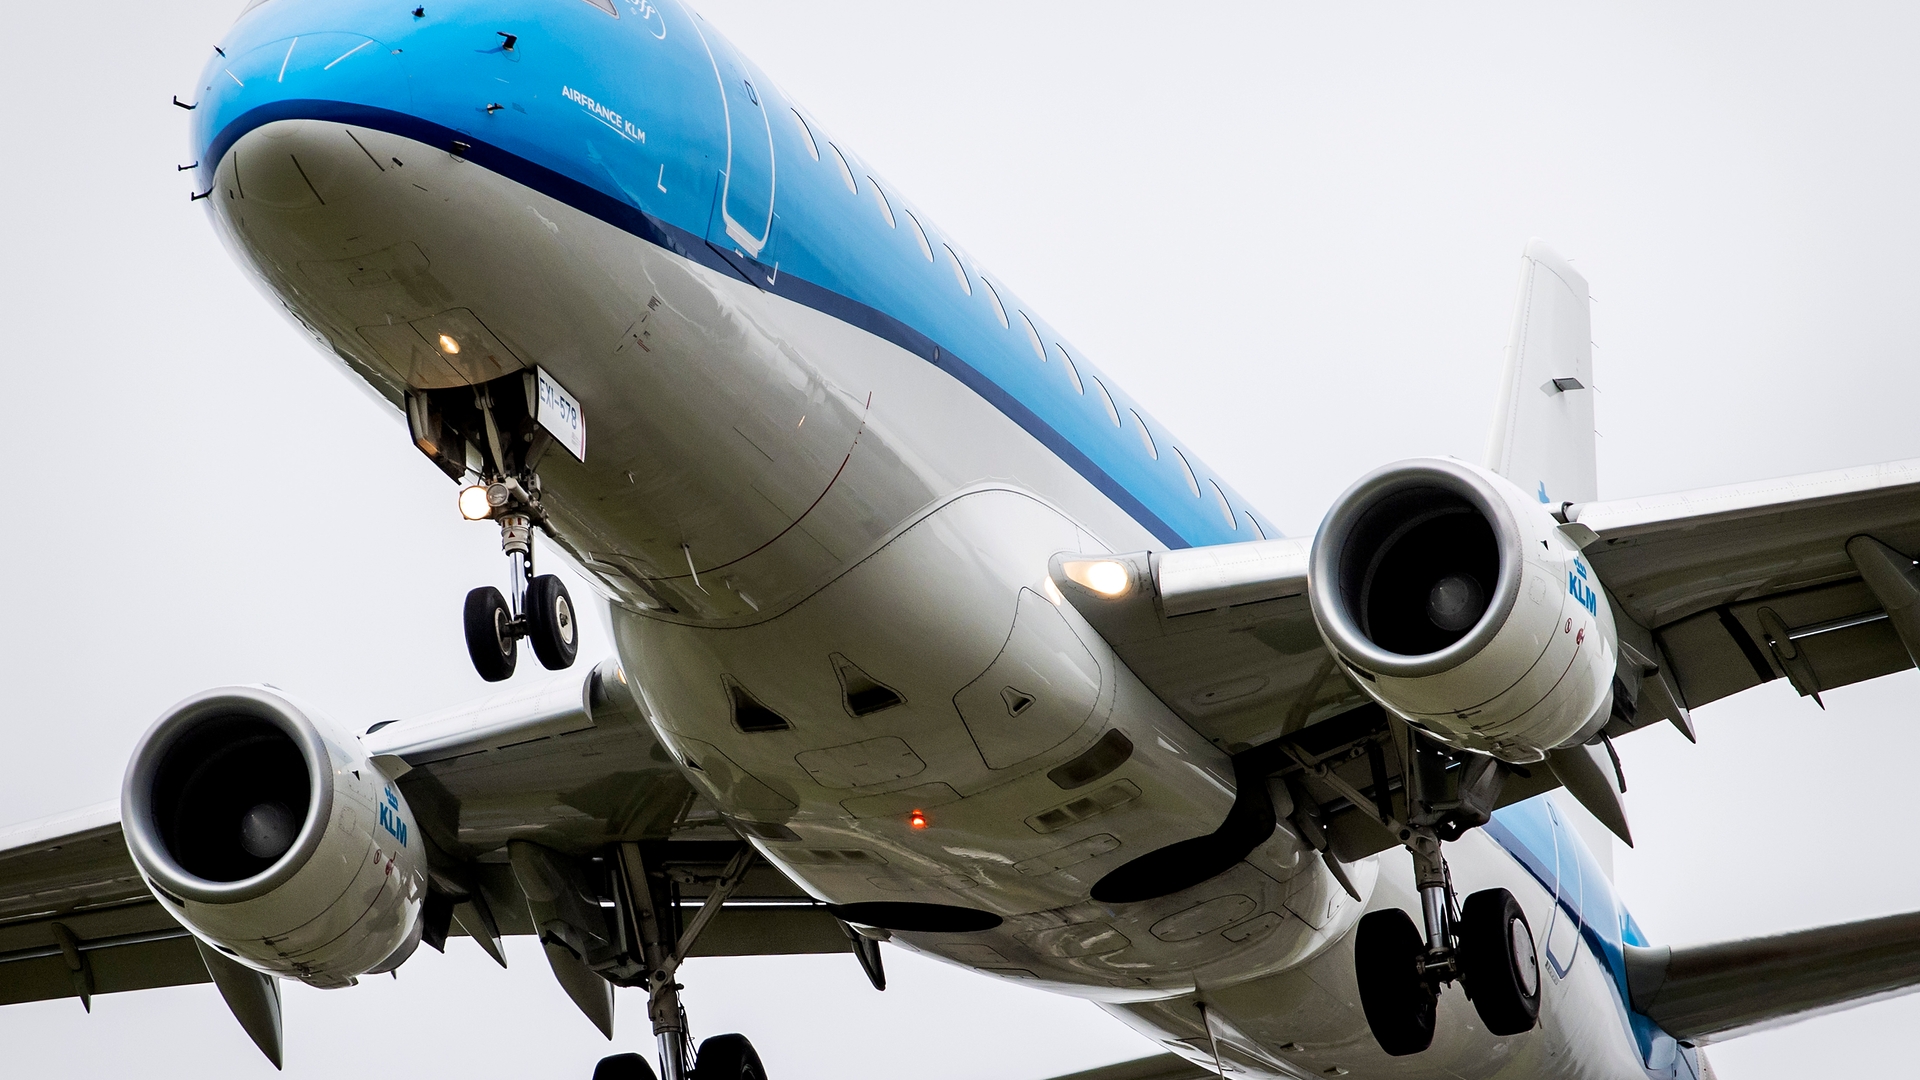 Crisisoverleg bij KLM met bonden over loonmatiging